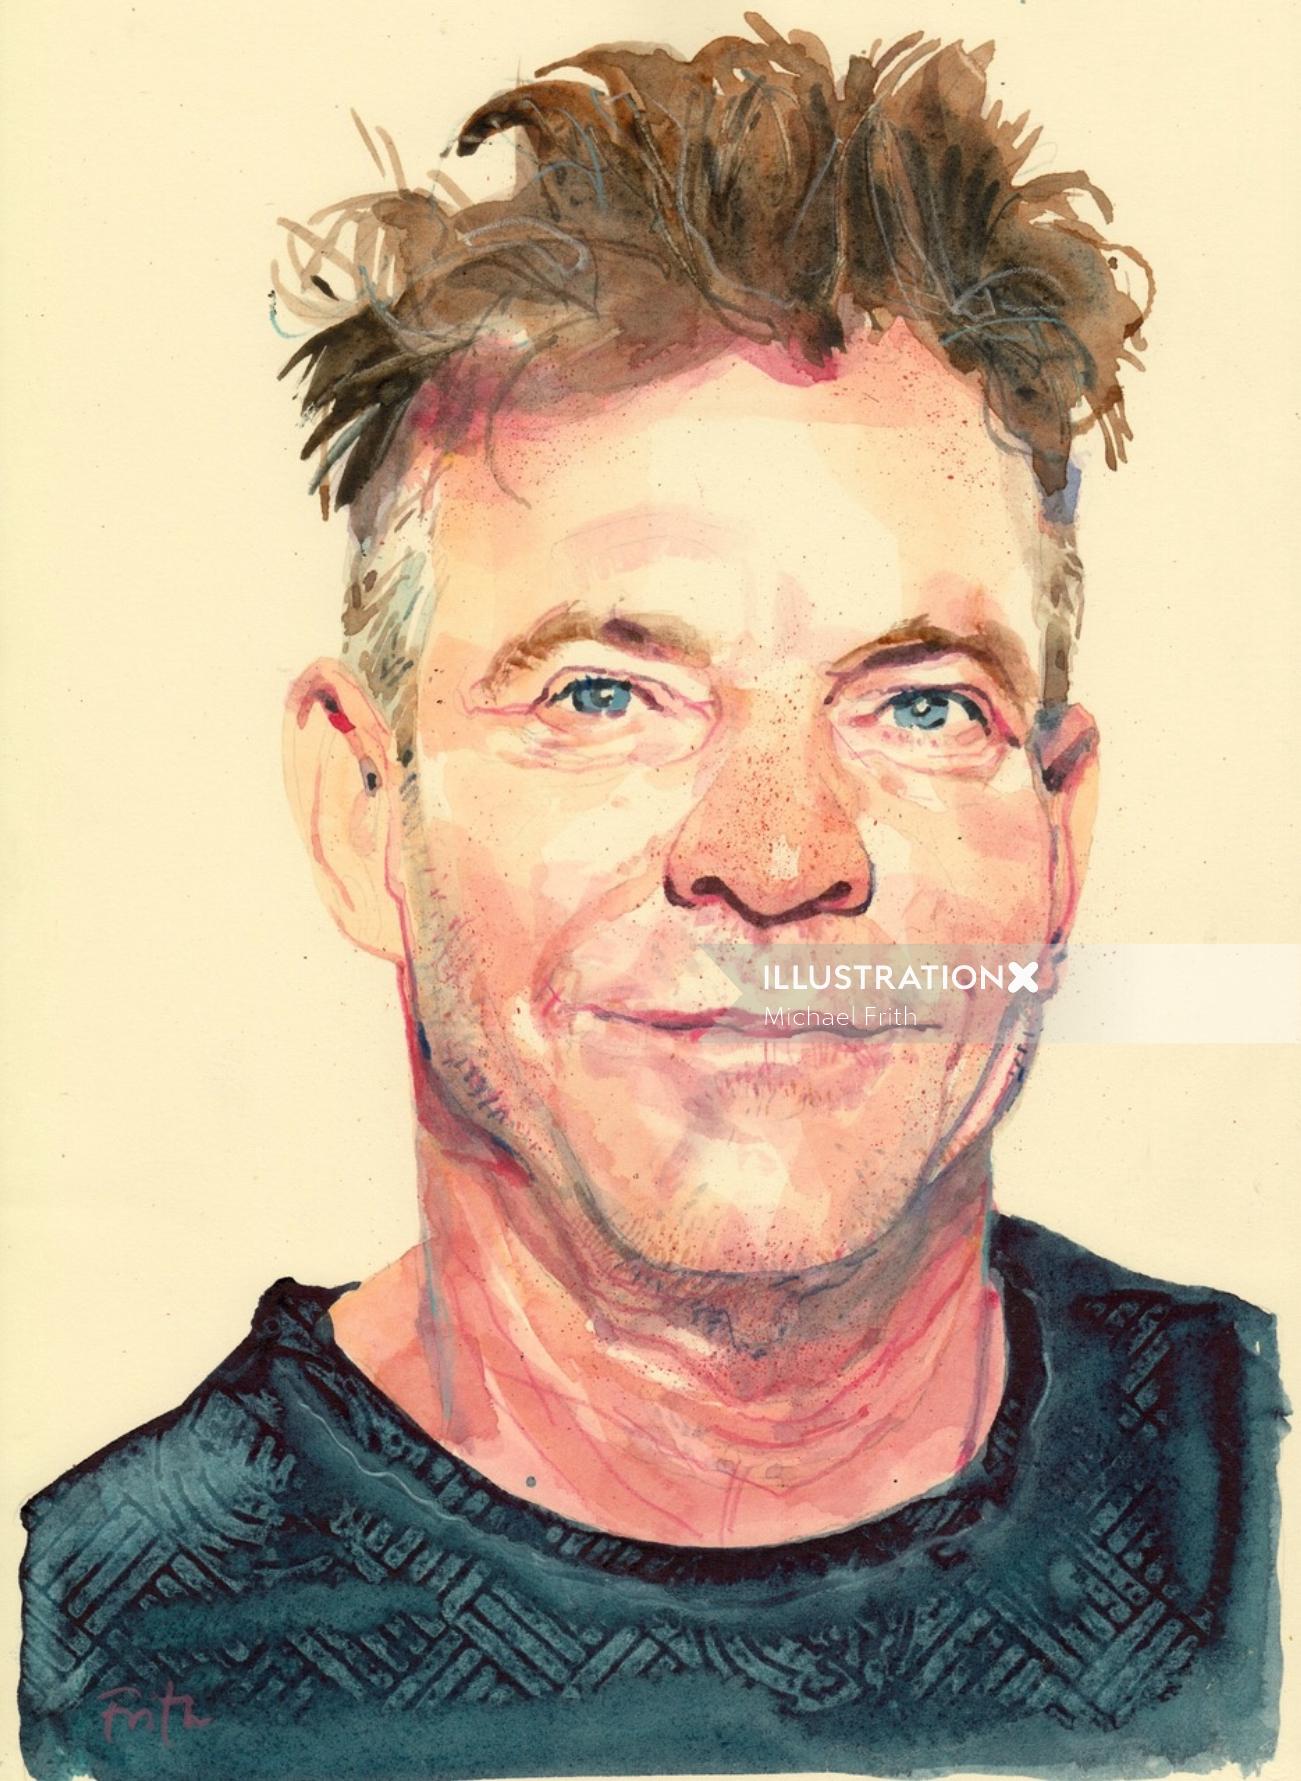 Watercolor illustration celebrity portrait
